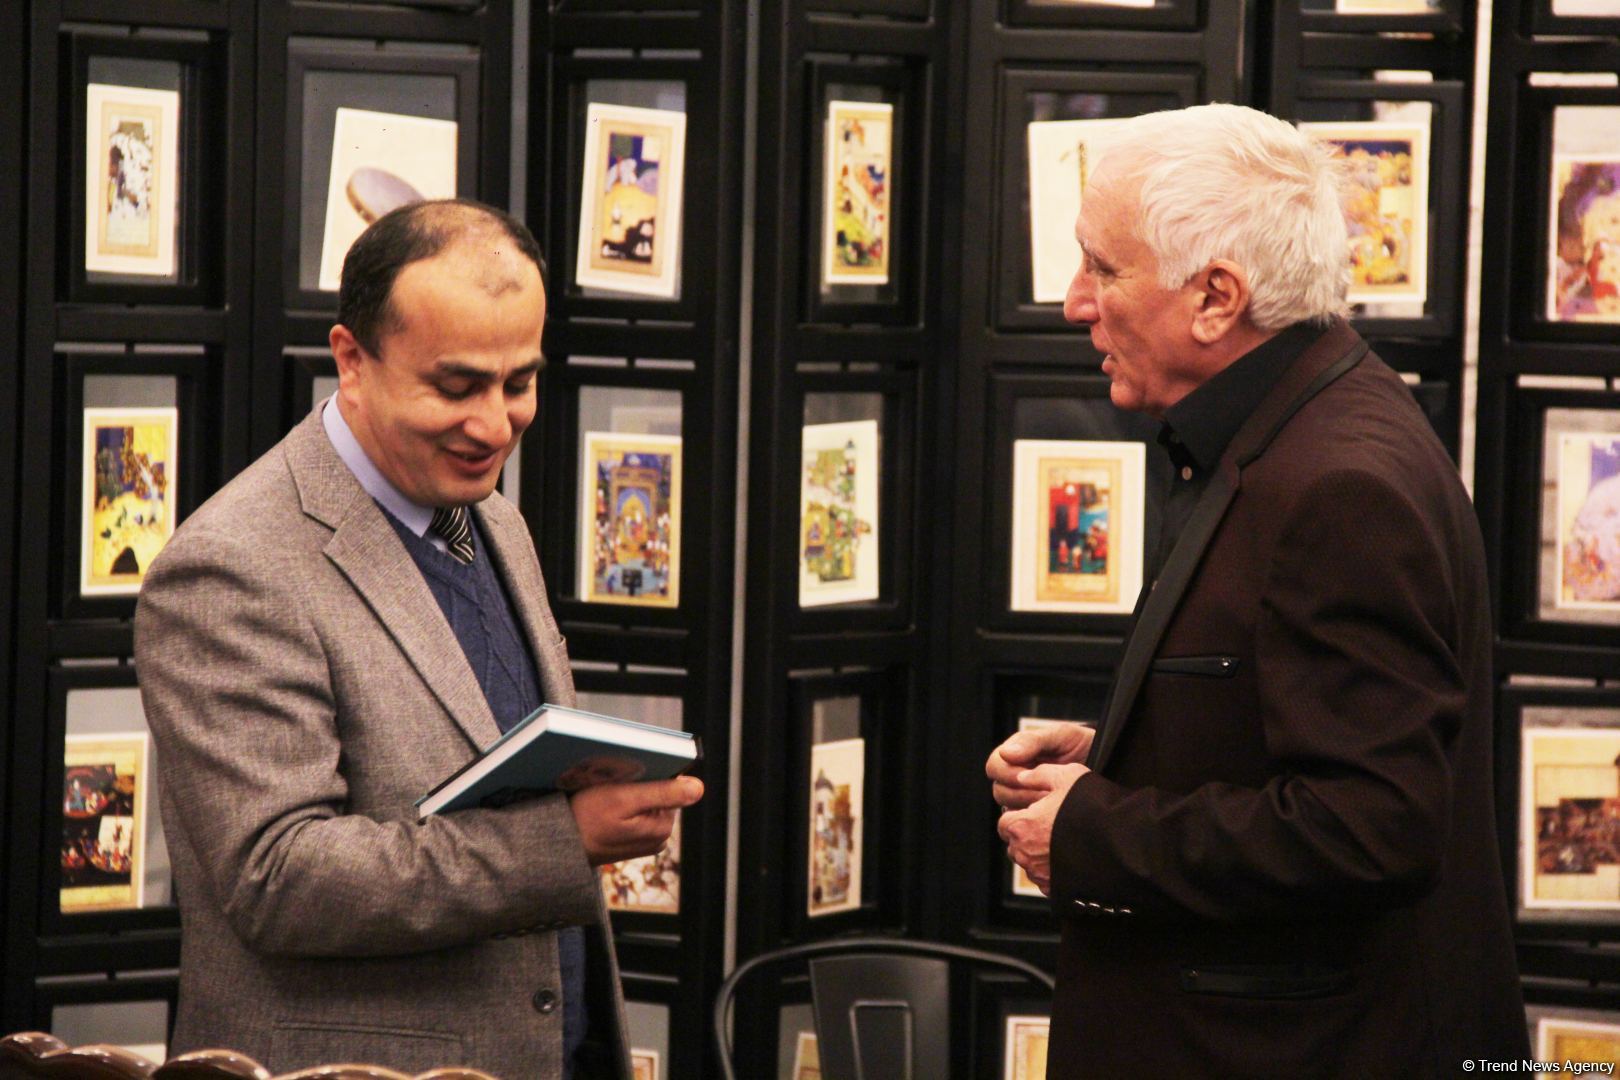 Юбилей Джафара Намига Камала в Баку отметили в атмосфере литературных произведений (ФОТО)